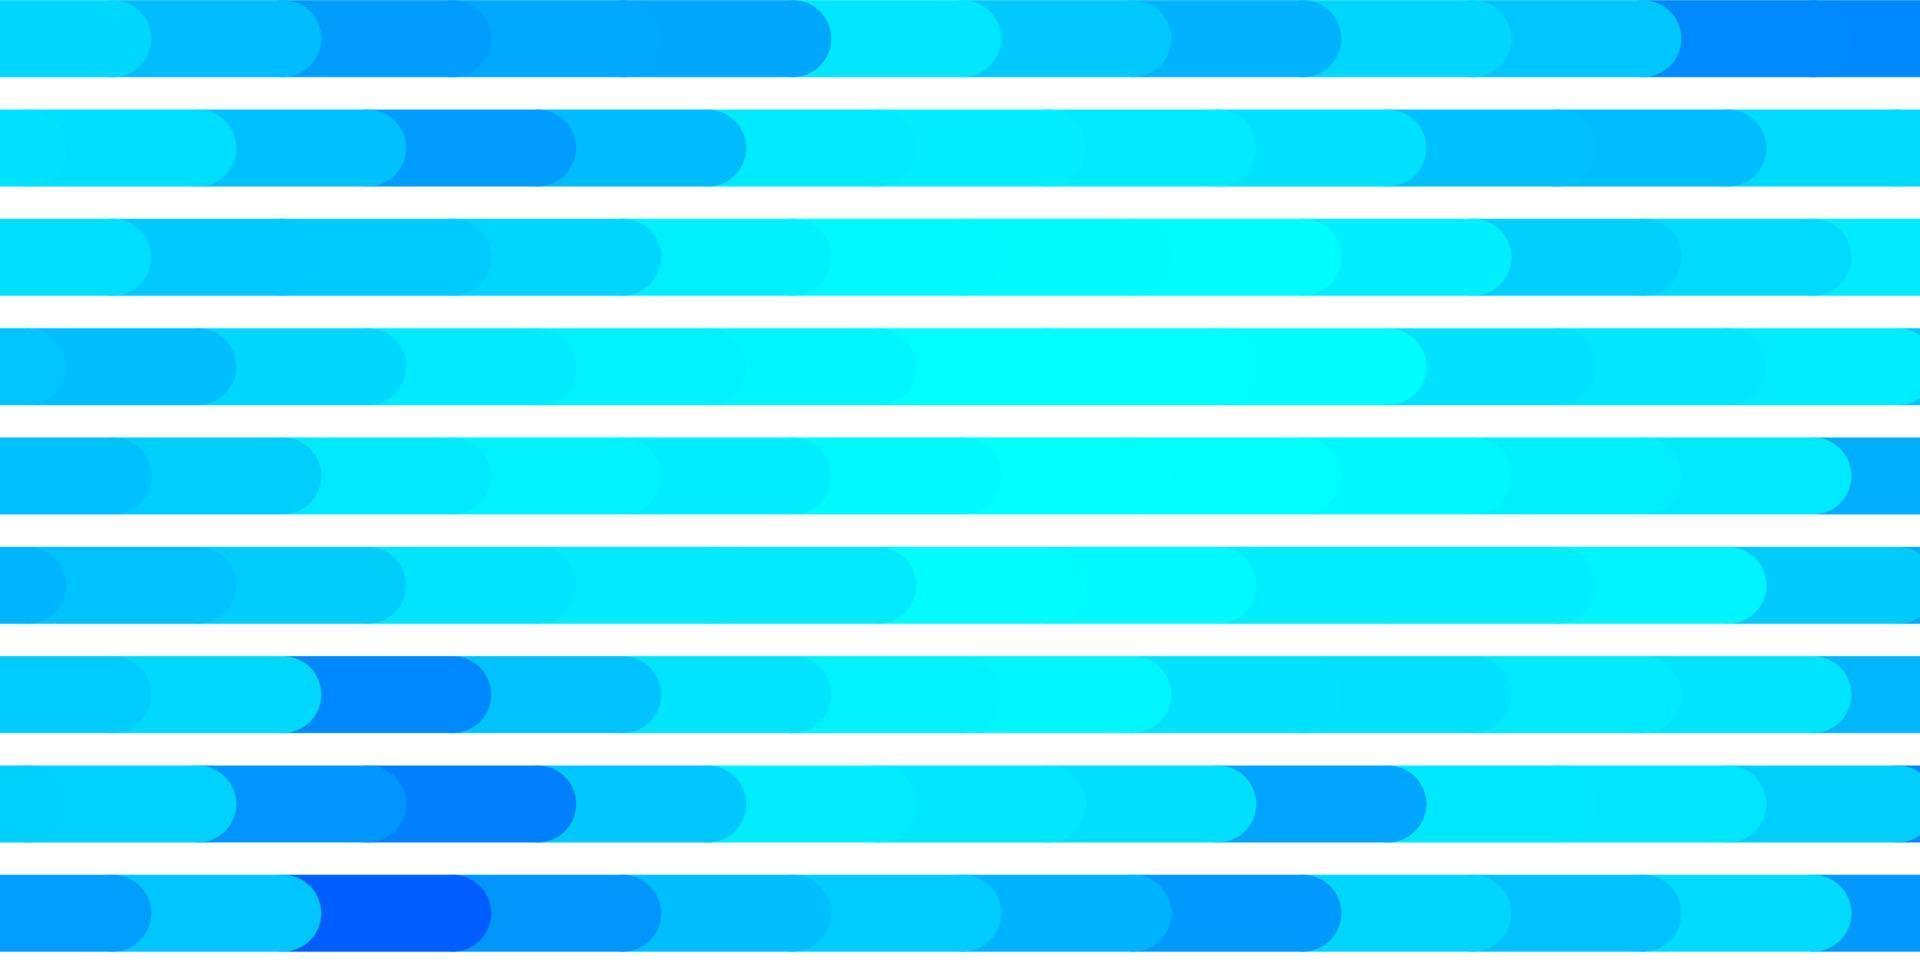 ljusblå vektorlayout med linjer. vektor